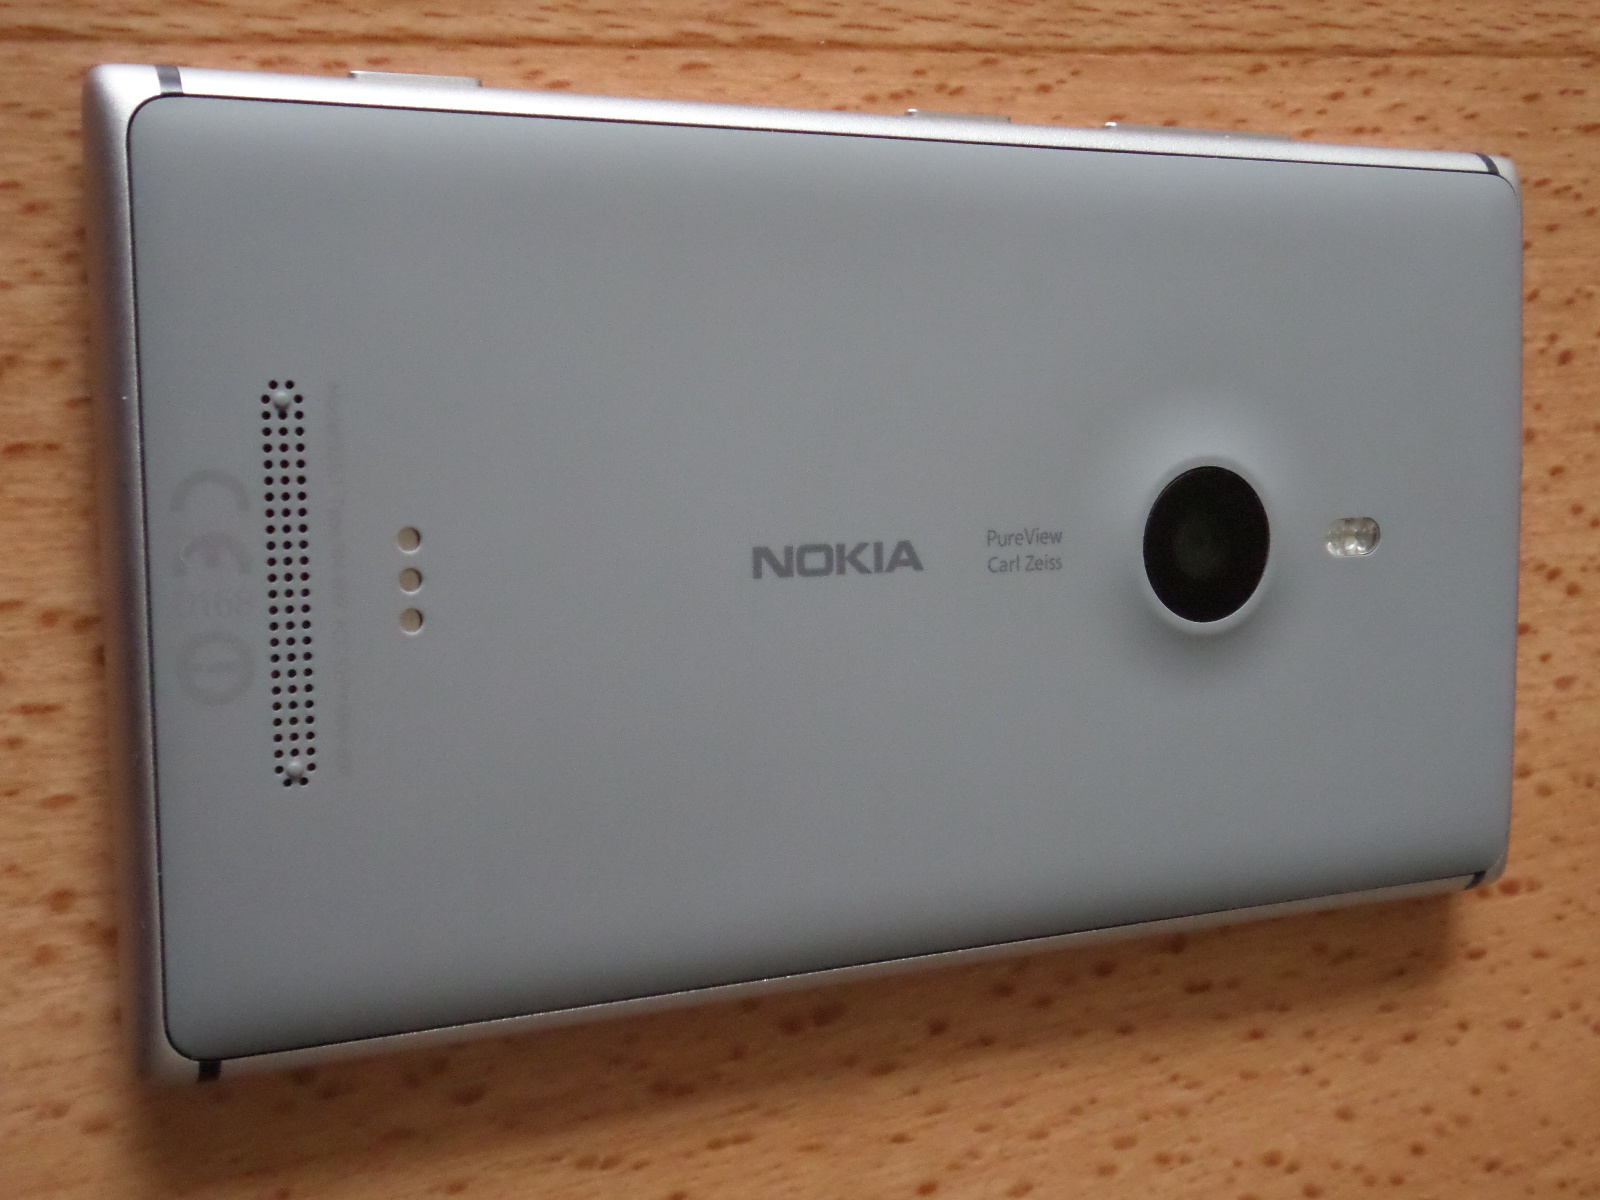  Sıfırdan farksız Lumia 925